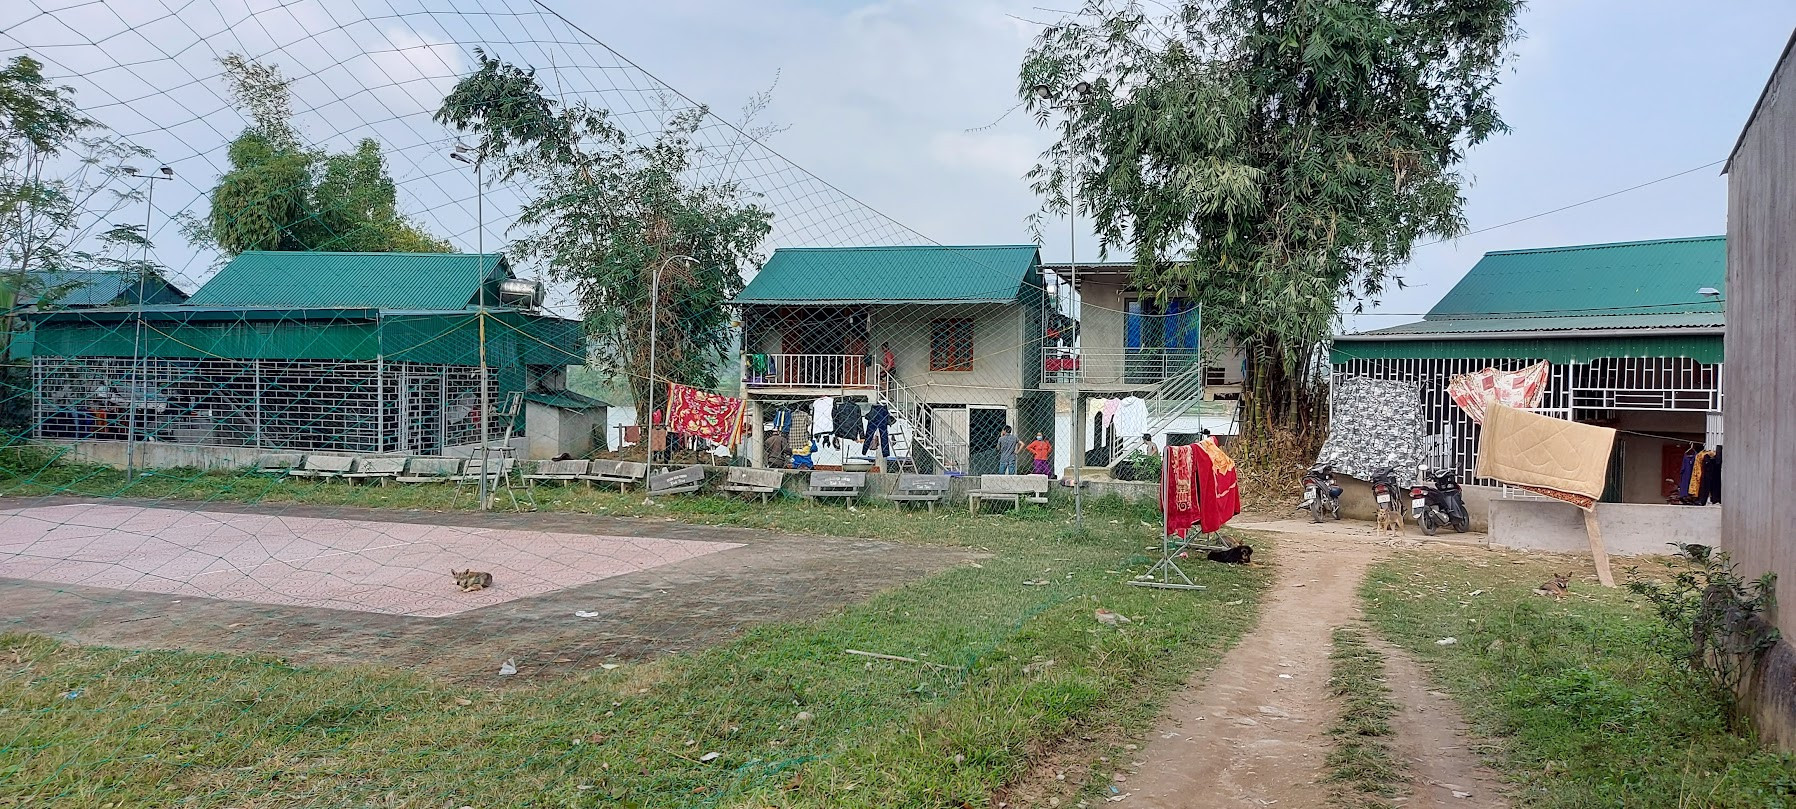 Chờ đợi tái định cư quá lâu, nhiều hộ gia đình đã dựng nhà ở kiên cố bên bờ sông Lam